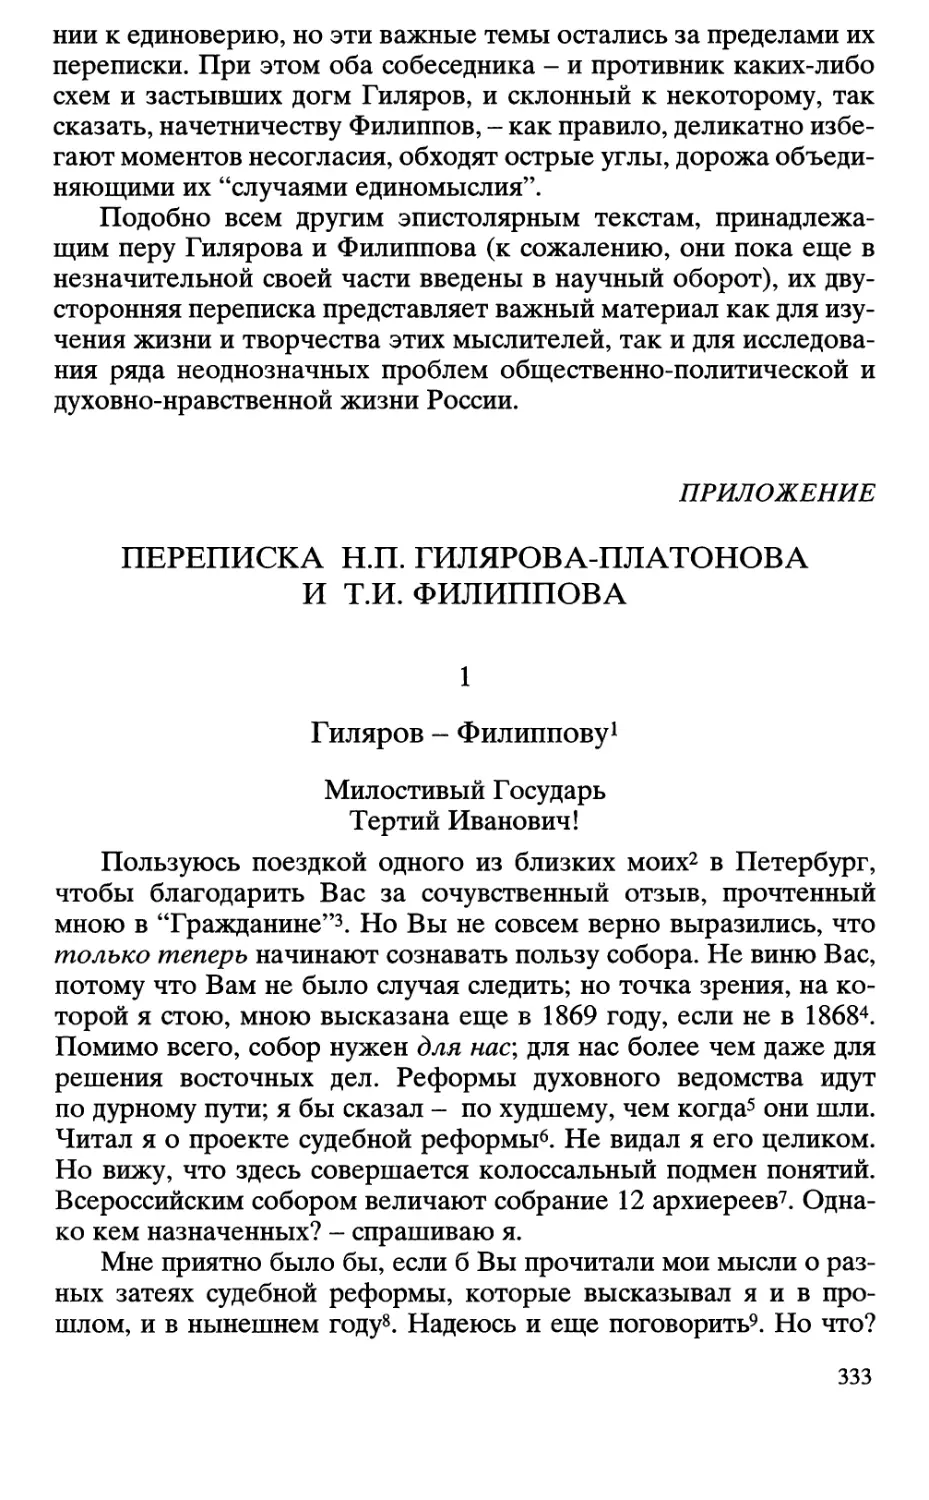 Приложение: Переписка Н.П. Гилярова-Платонова и Т.И. Филиппова